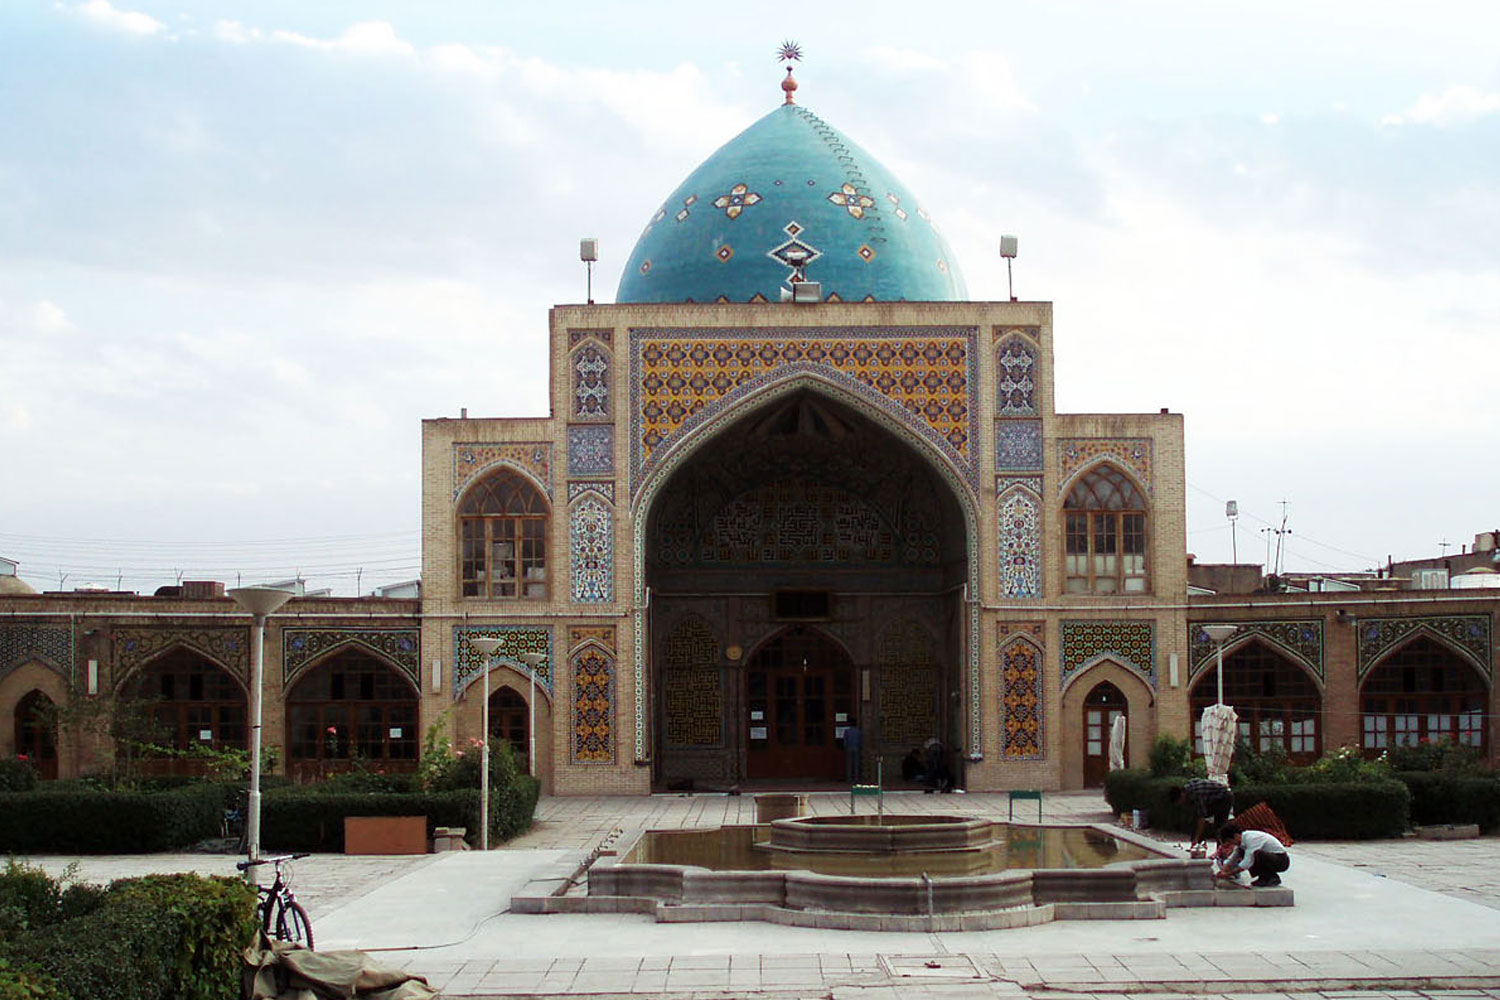 مسجد سید اصفهان، شاهکار معماری قرن سیزده هجری